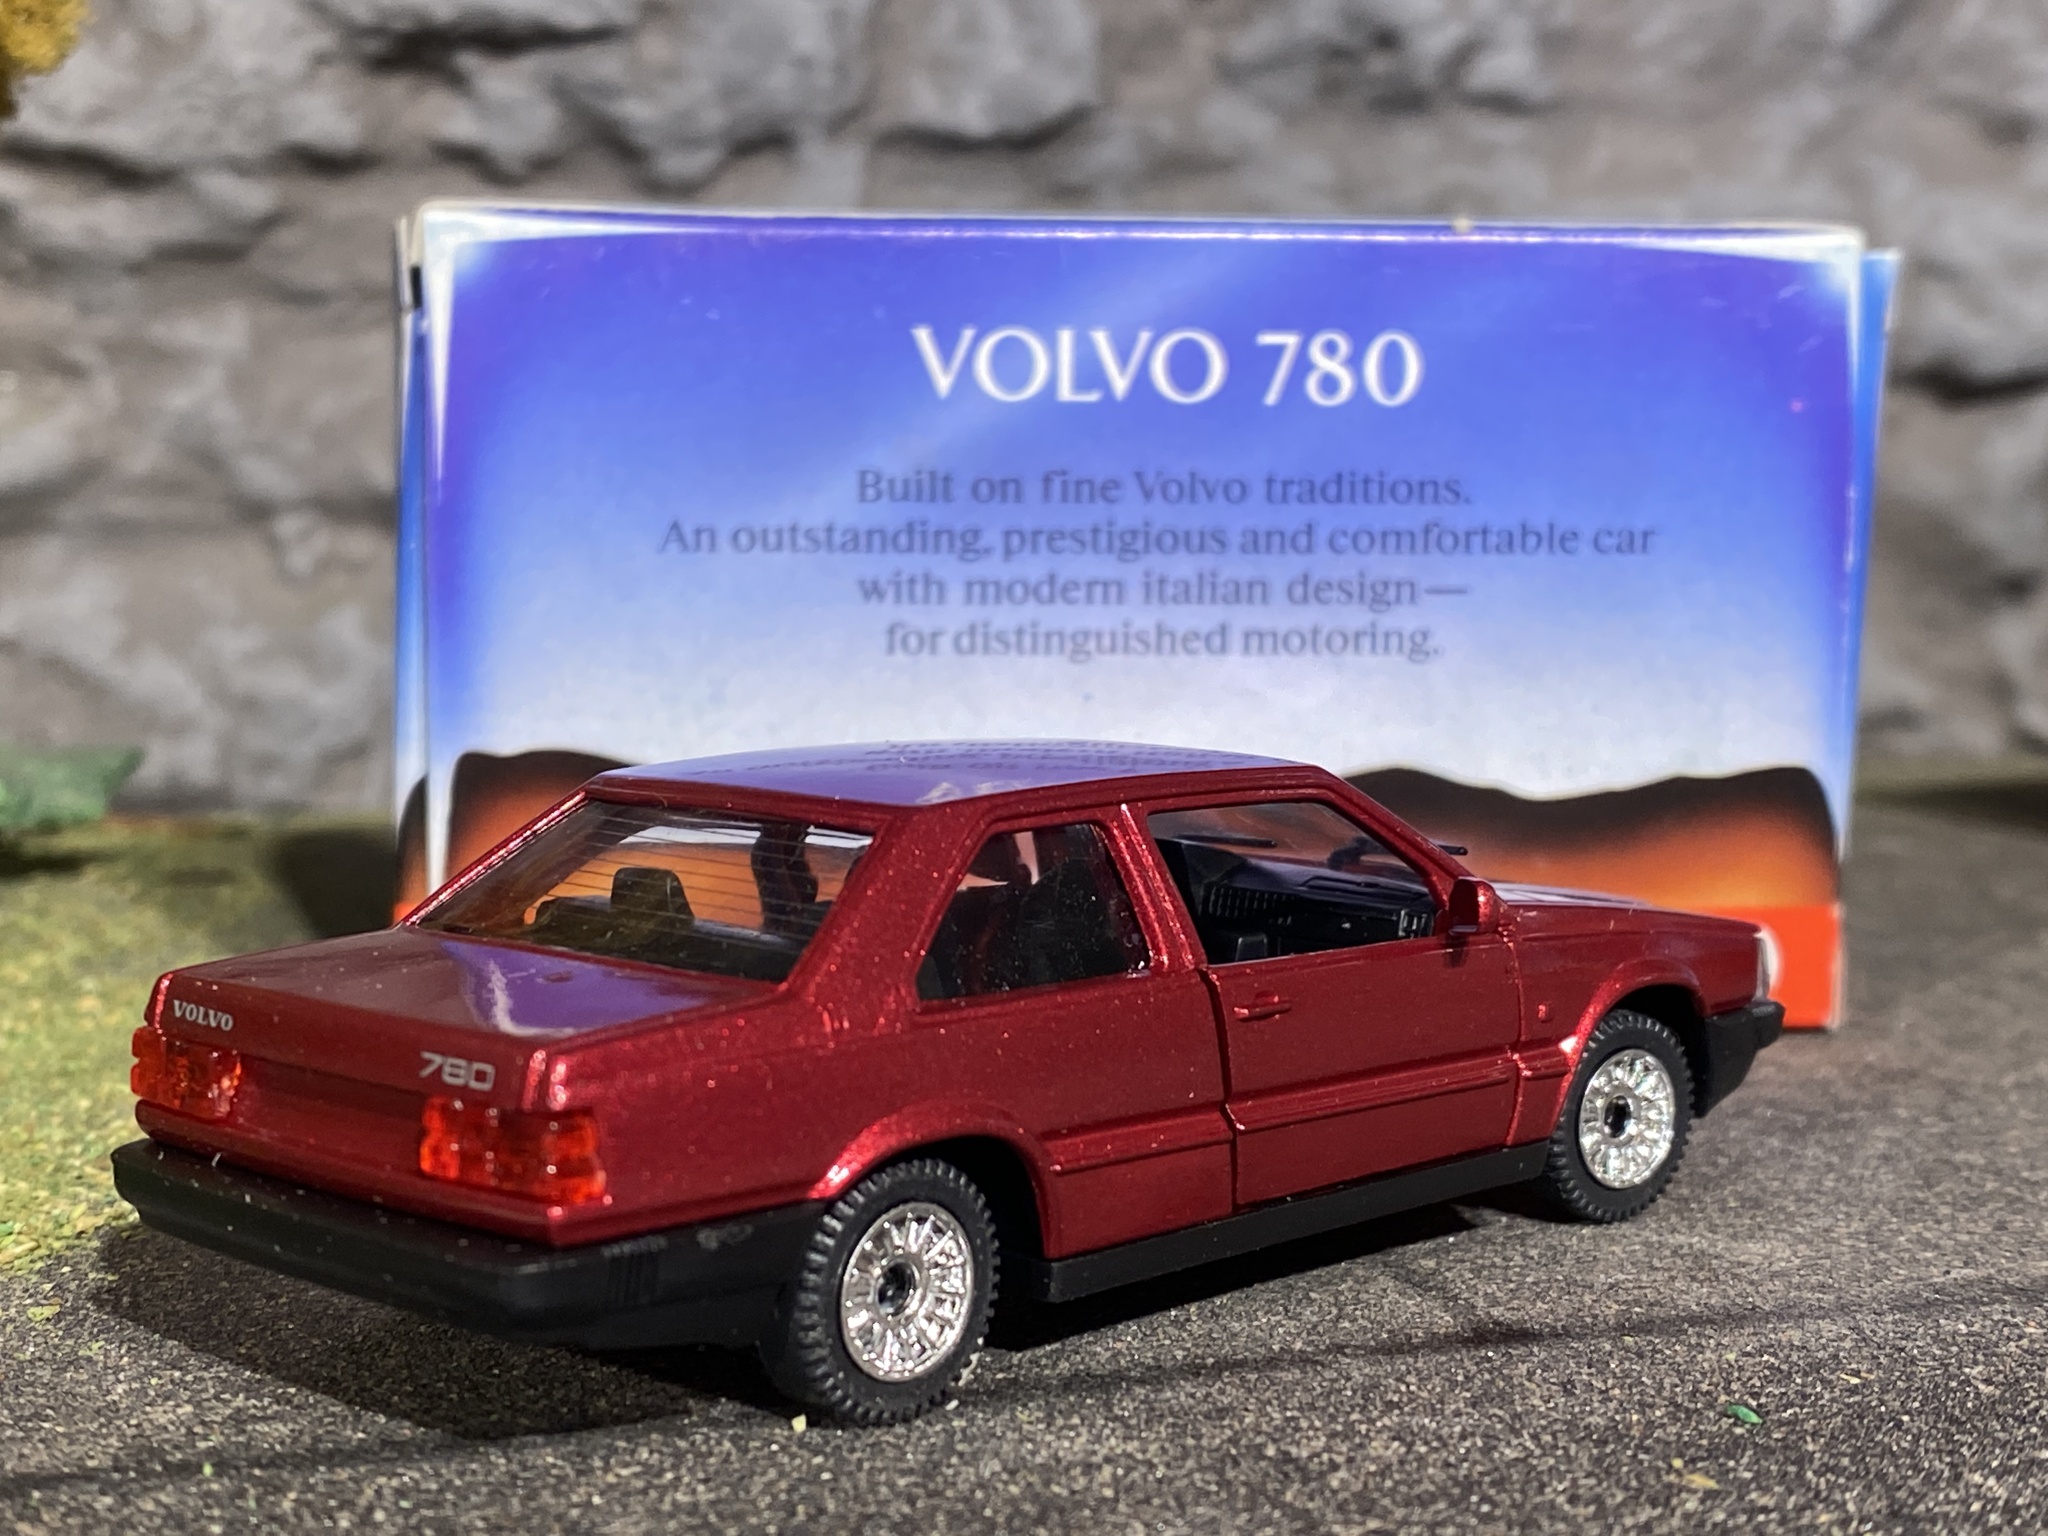 Skala 1/43 (Skala 1/40) Volvo 780 Mörkröd met. fr Tonka / Polistil - Made in Italy